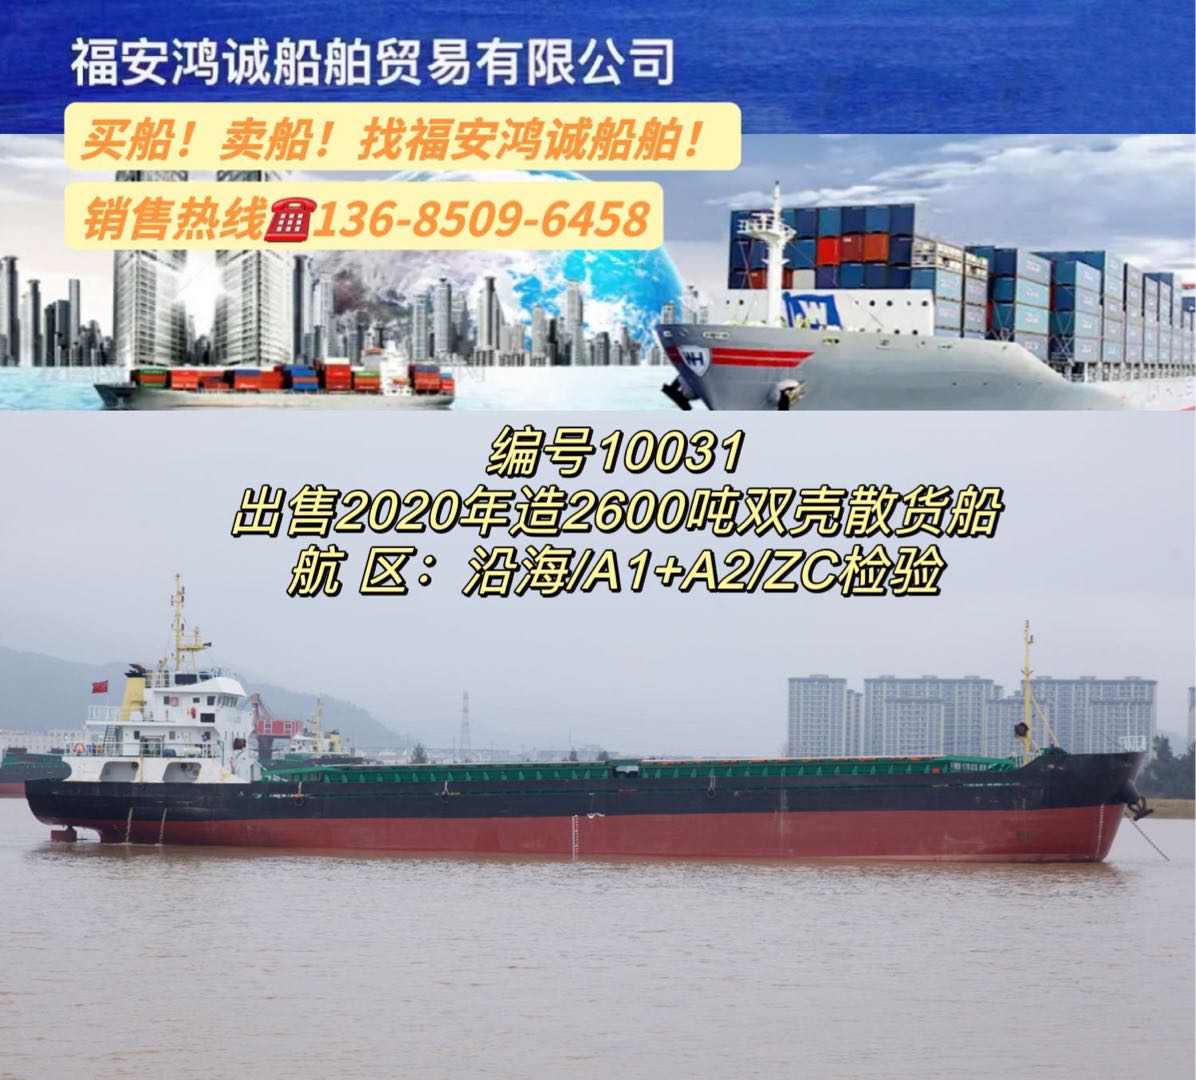 出售2020年2600吨双壳散货船